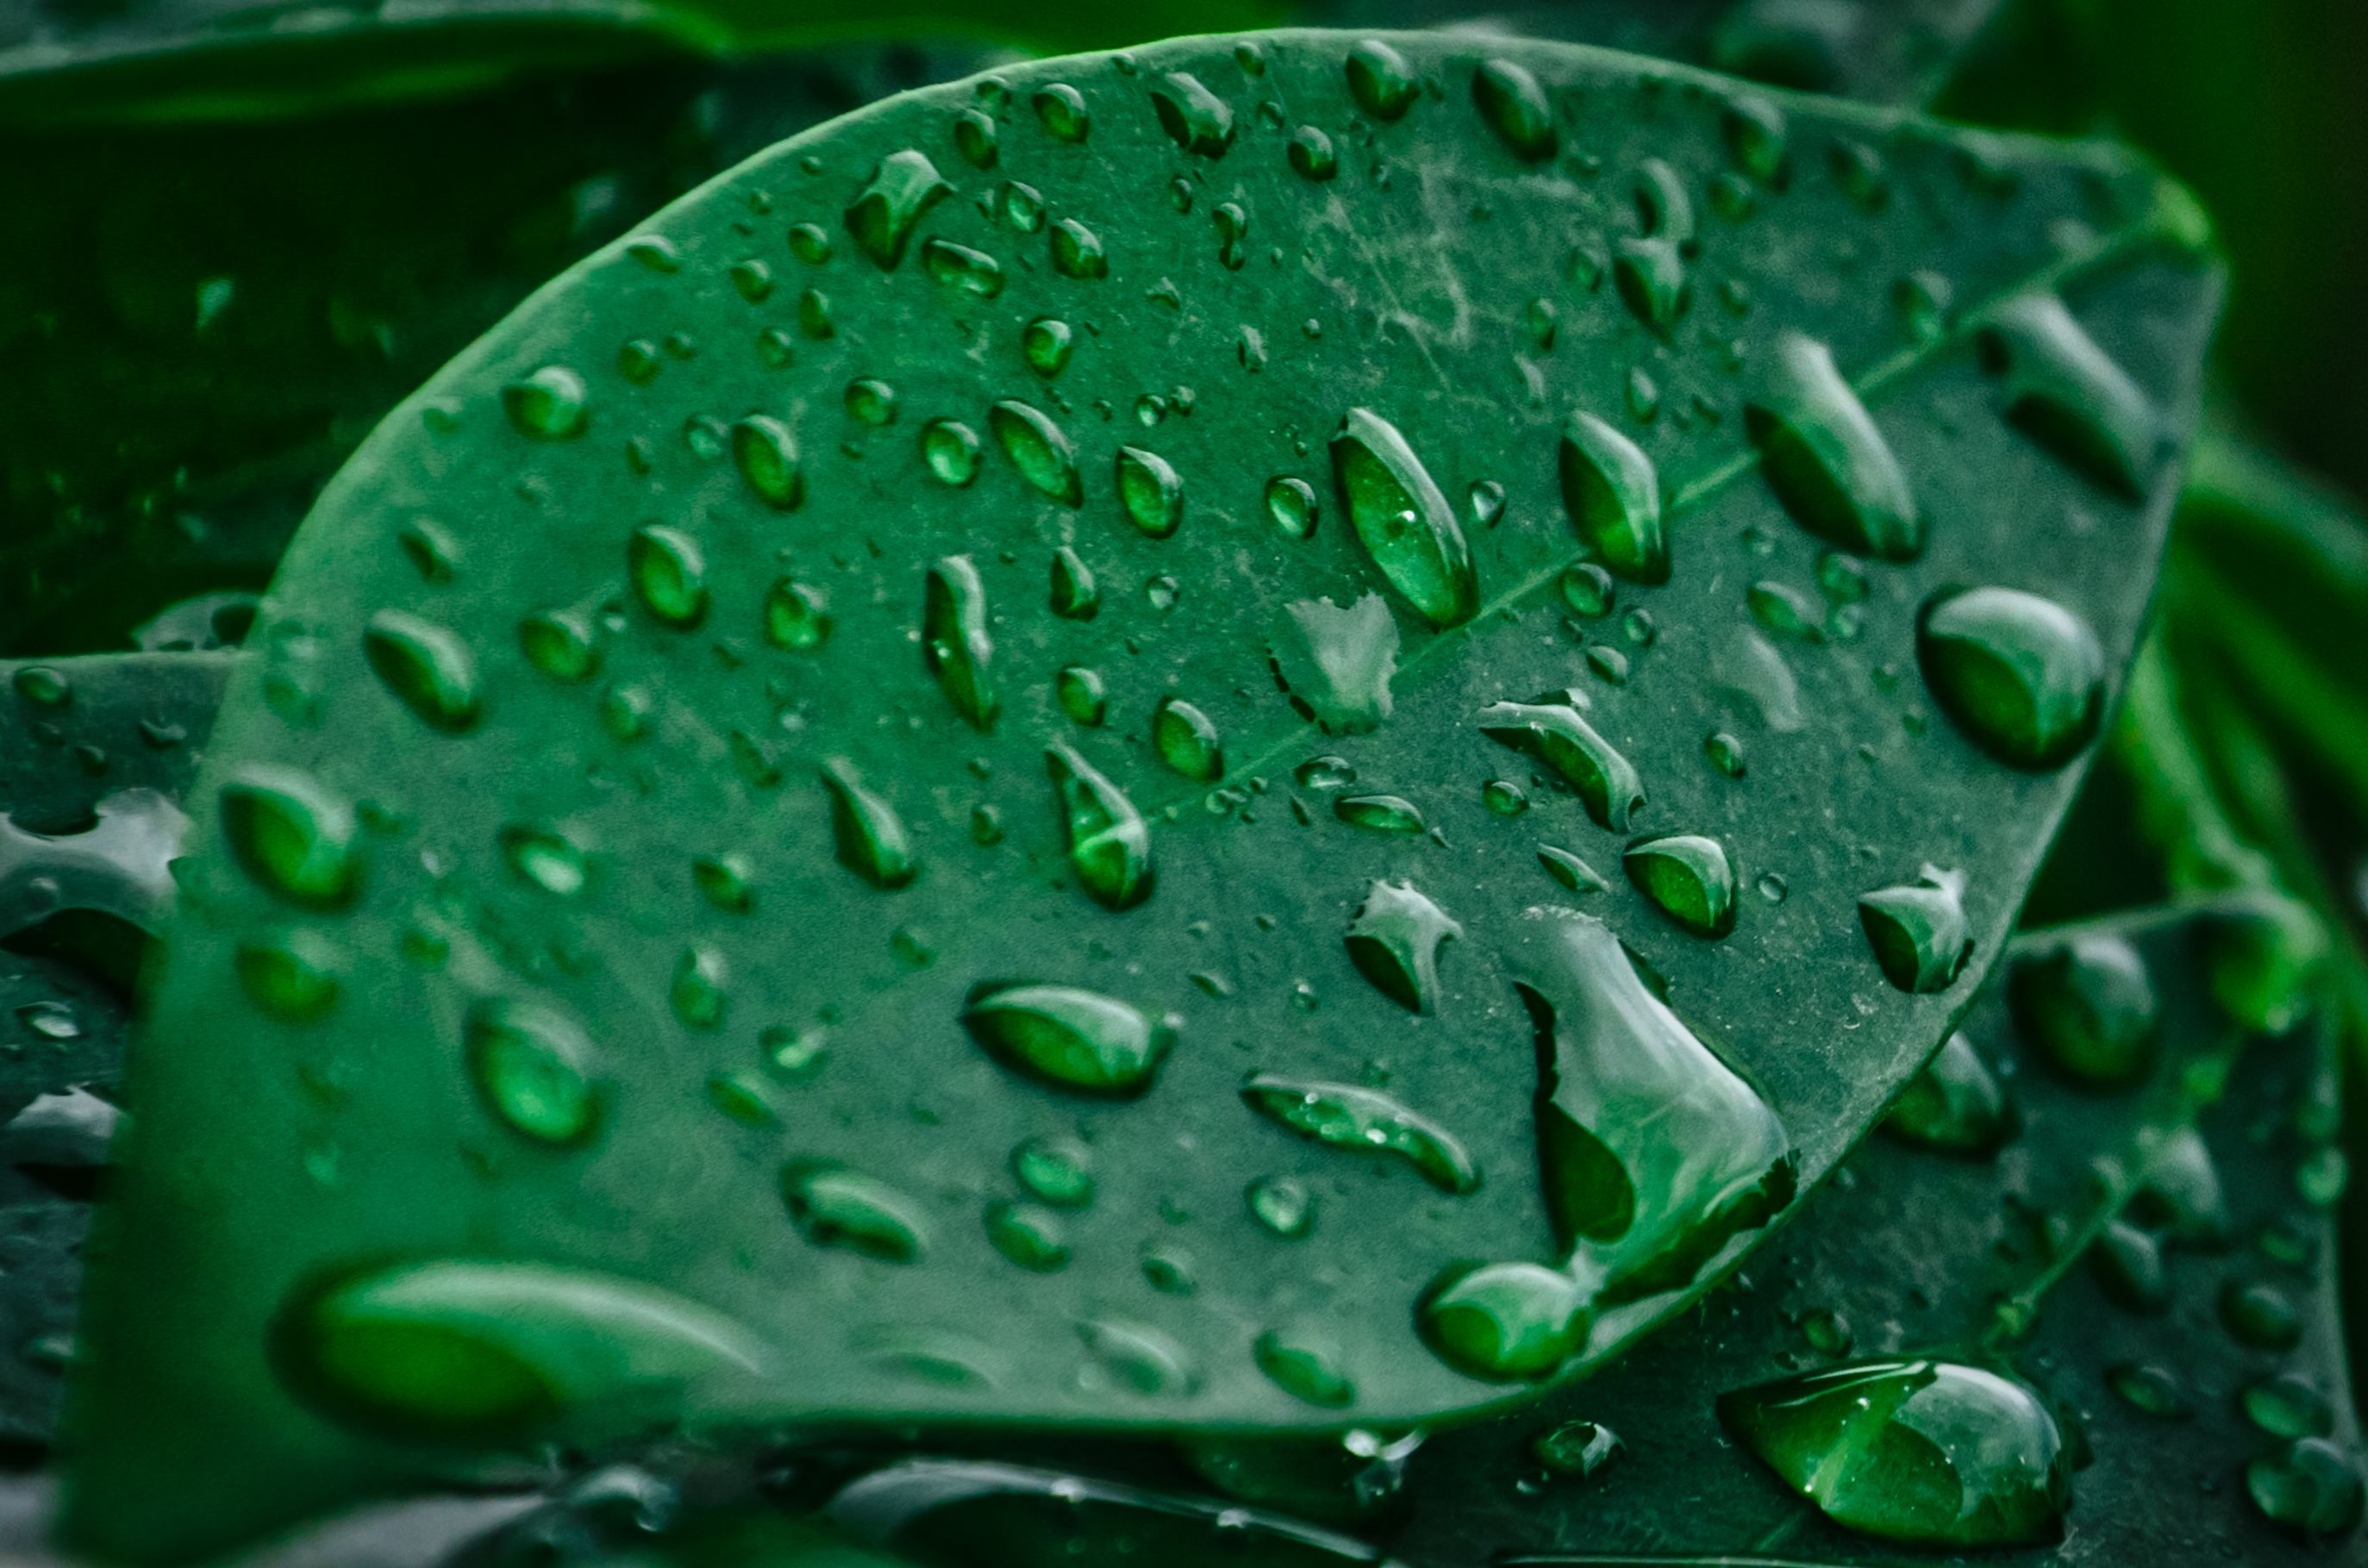 Raindrop leaf by Leoric777 | Rain | Pinterest | Leaves